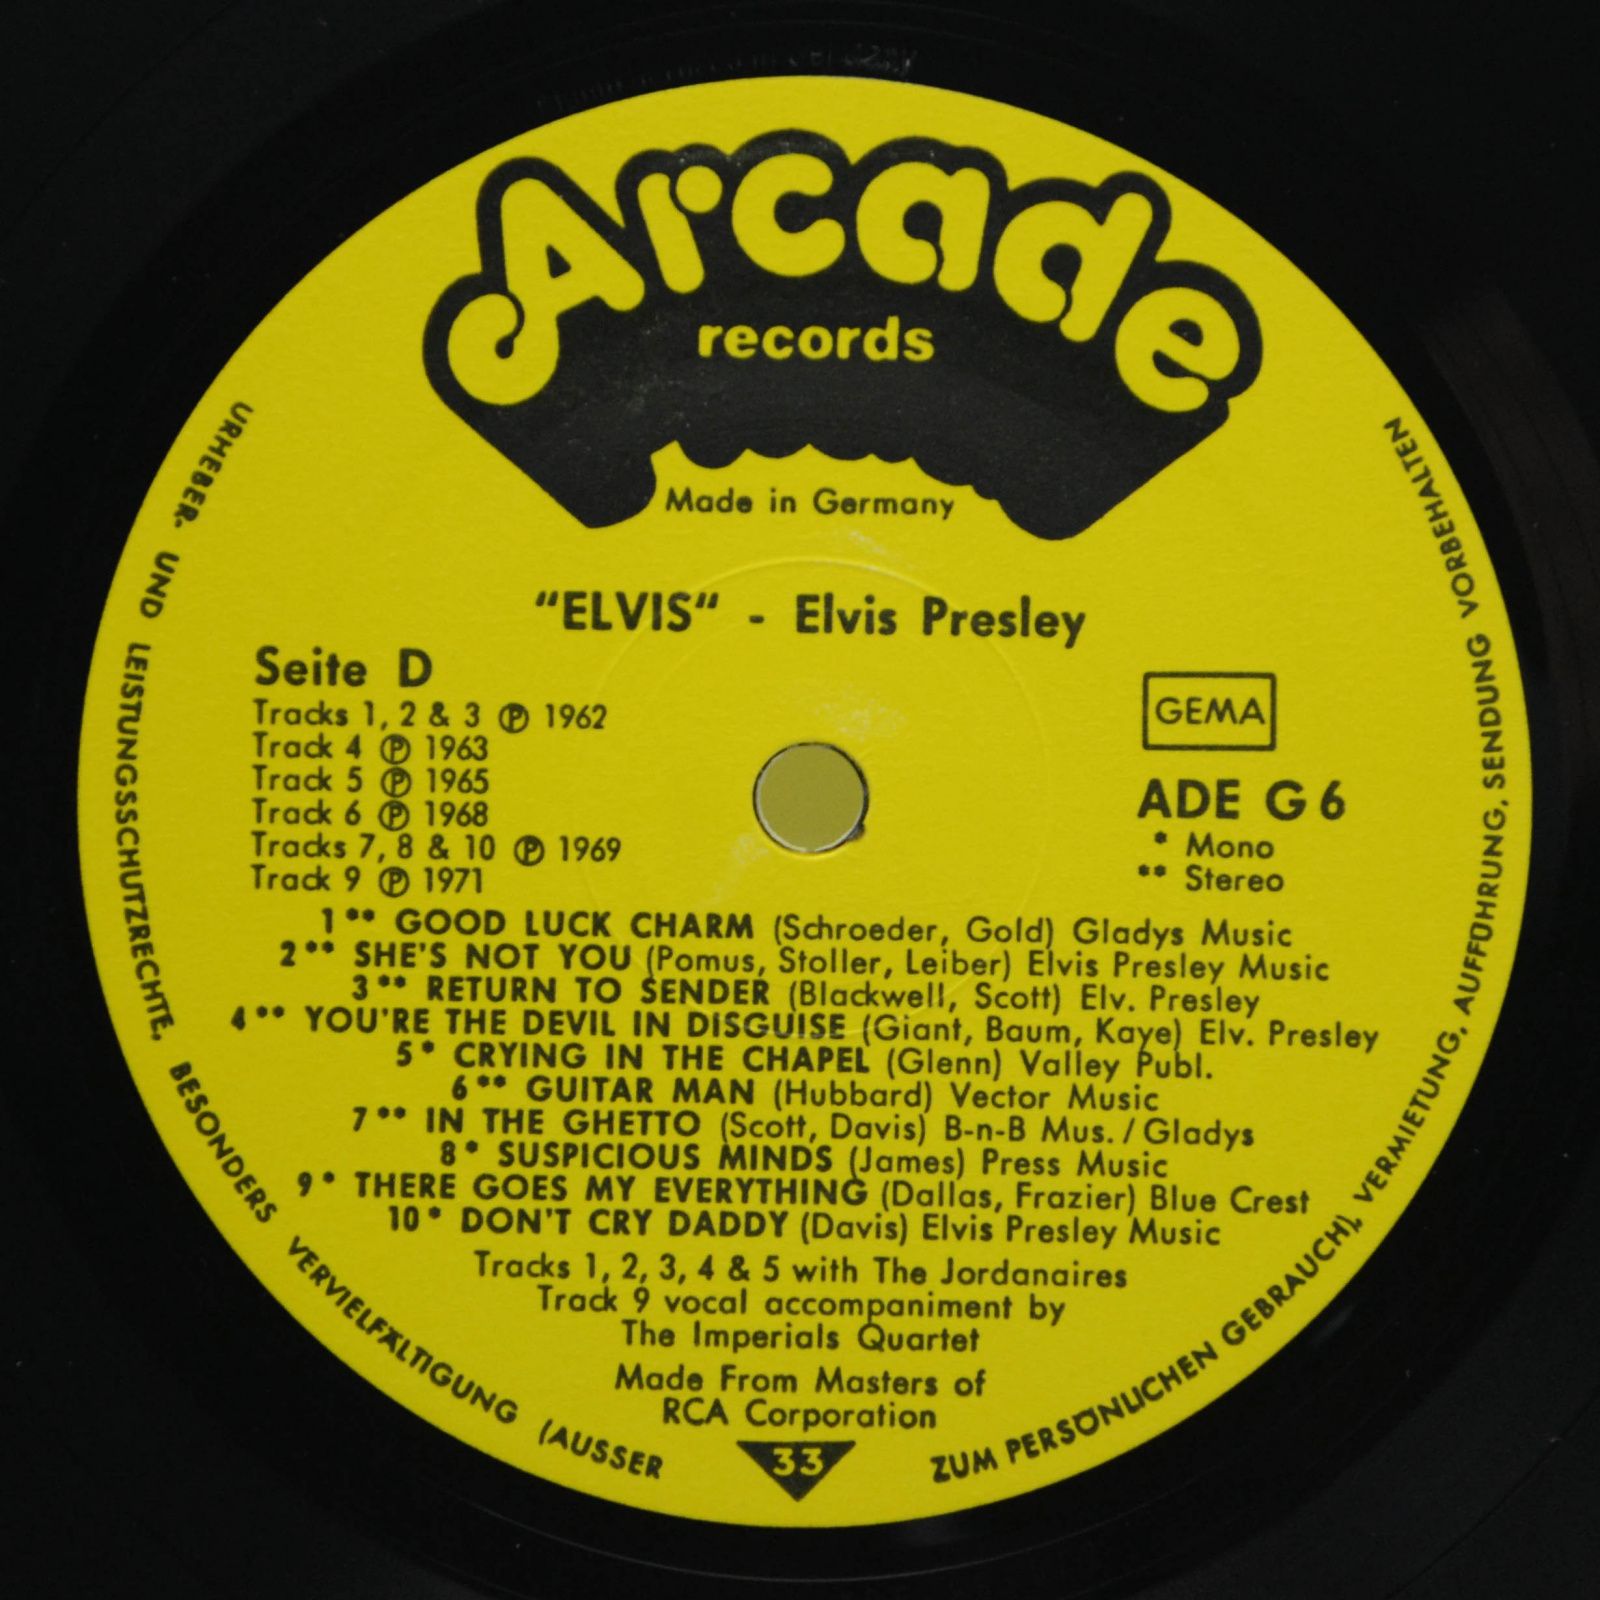 Elvis — Seine 40 Grössten Hits (2LP), 1975